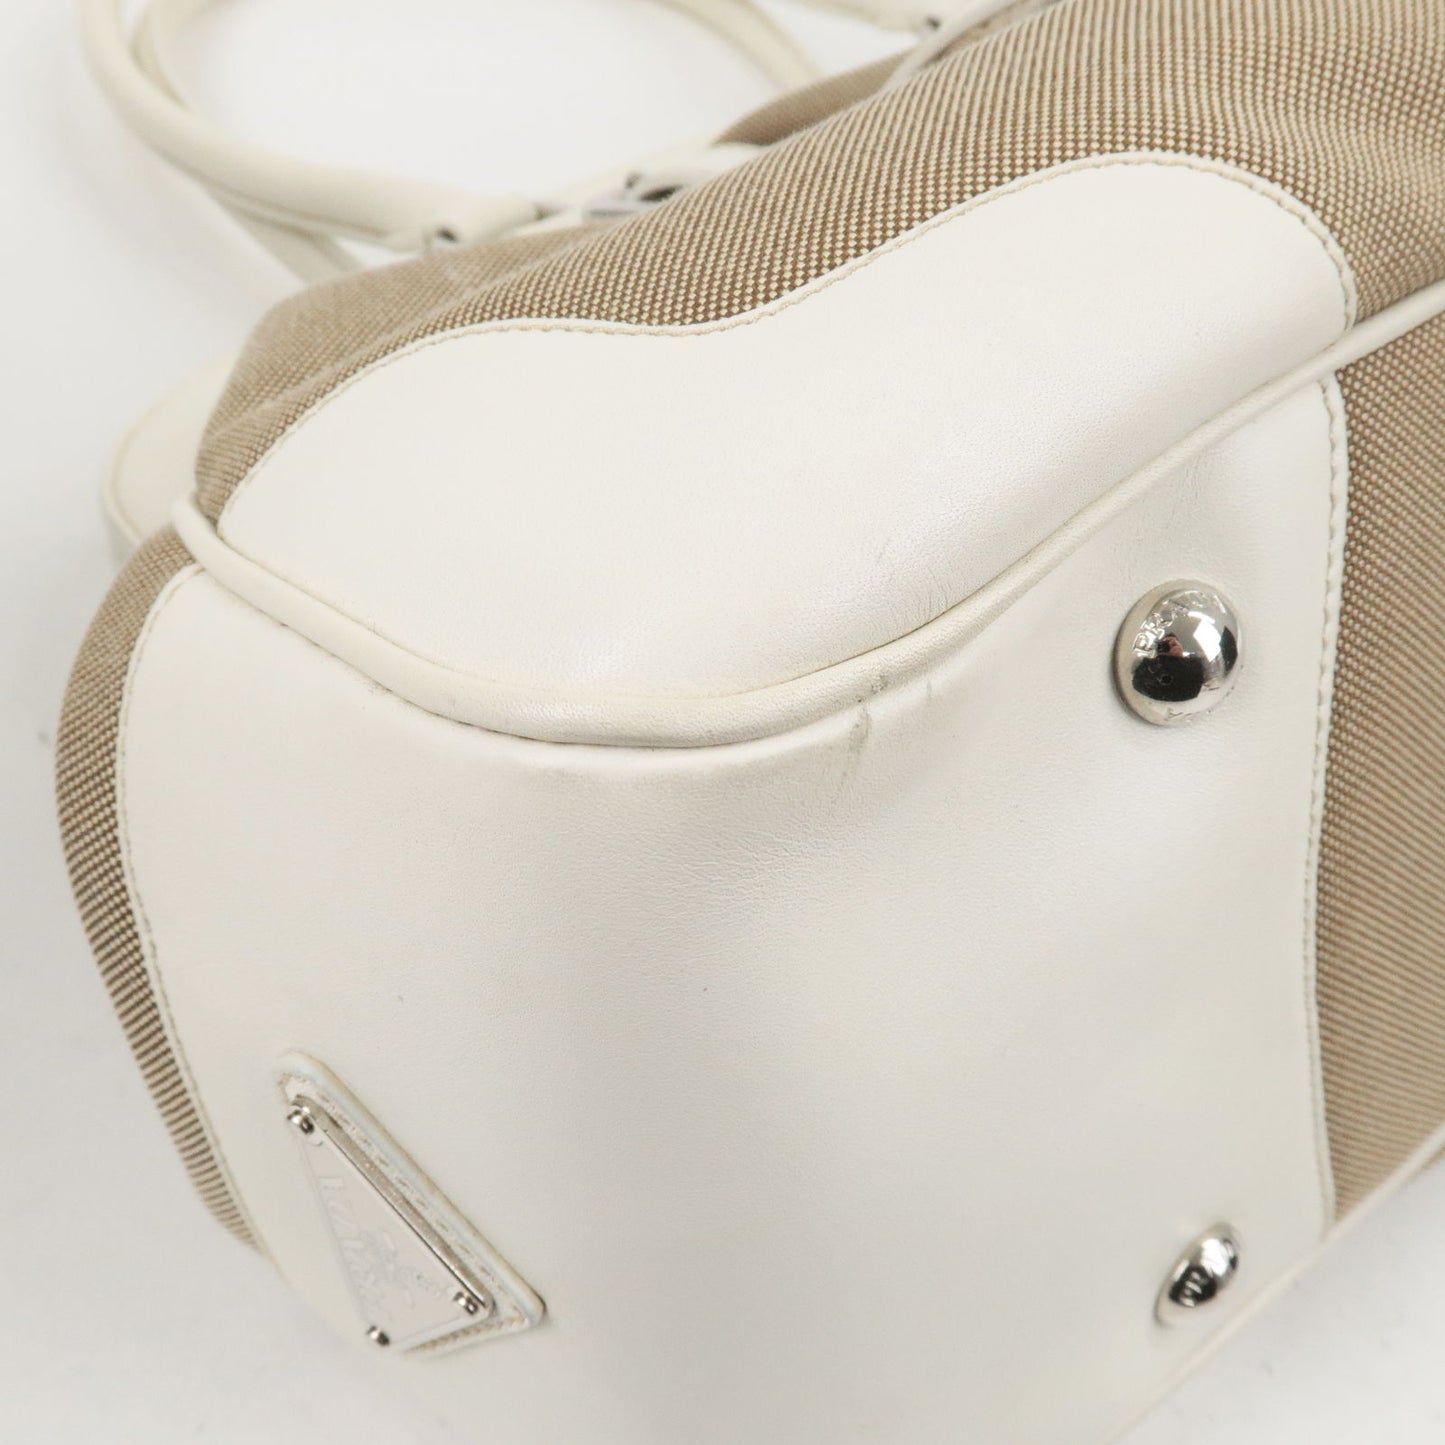 PRADA Logo Jacquard Leather Shoulder Bag Hand Bag Beige Ivory